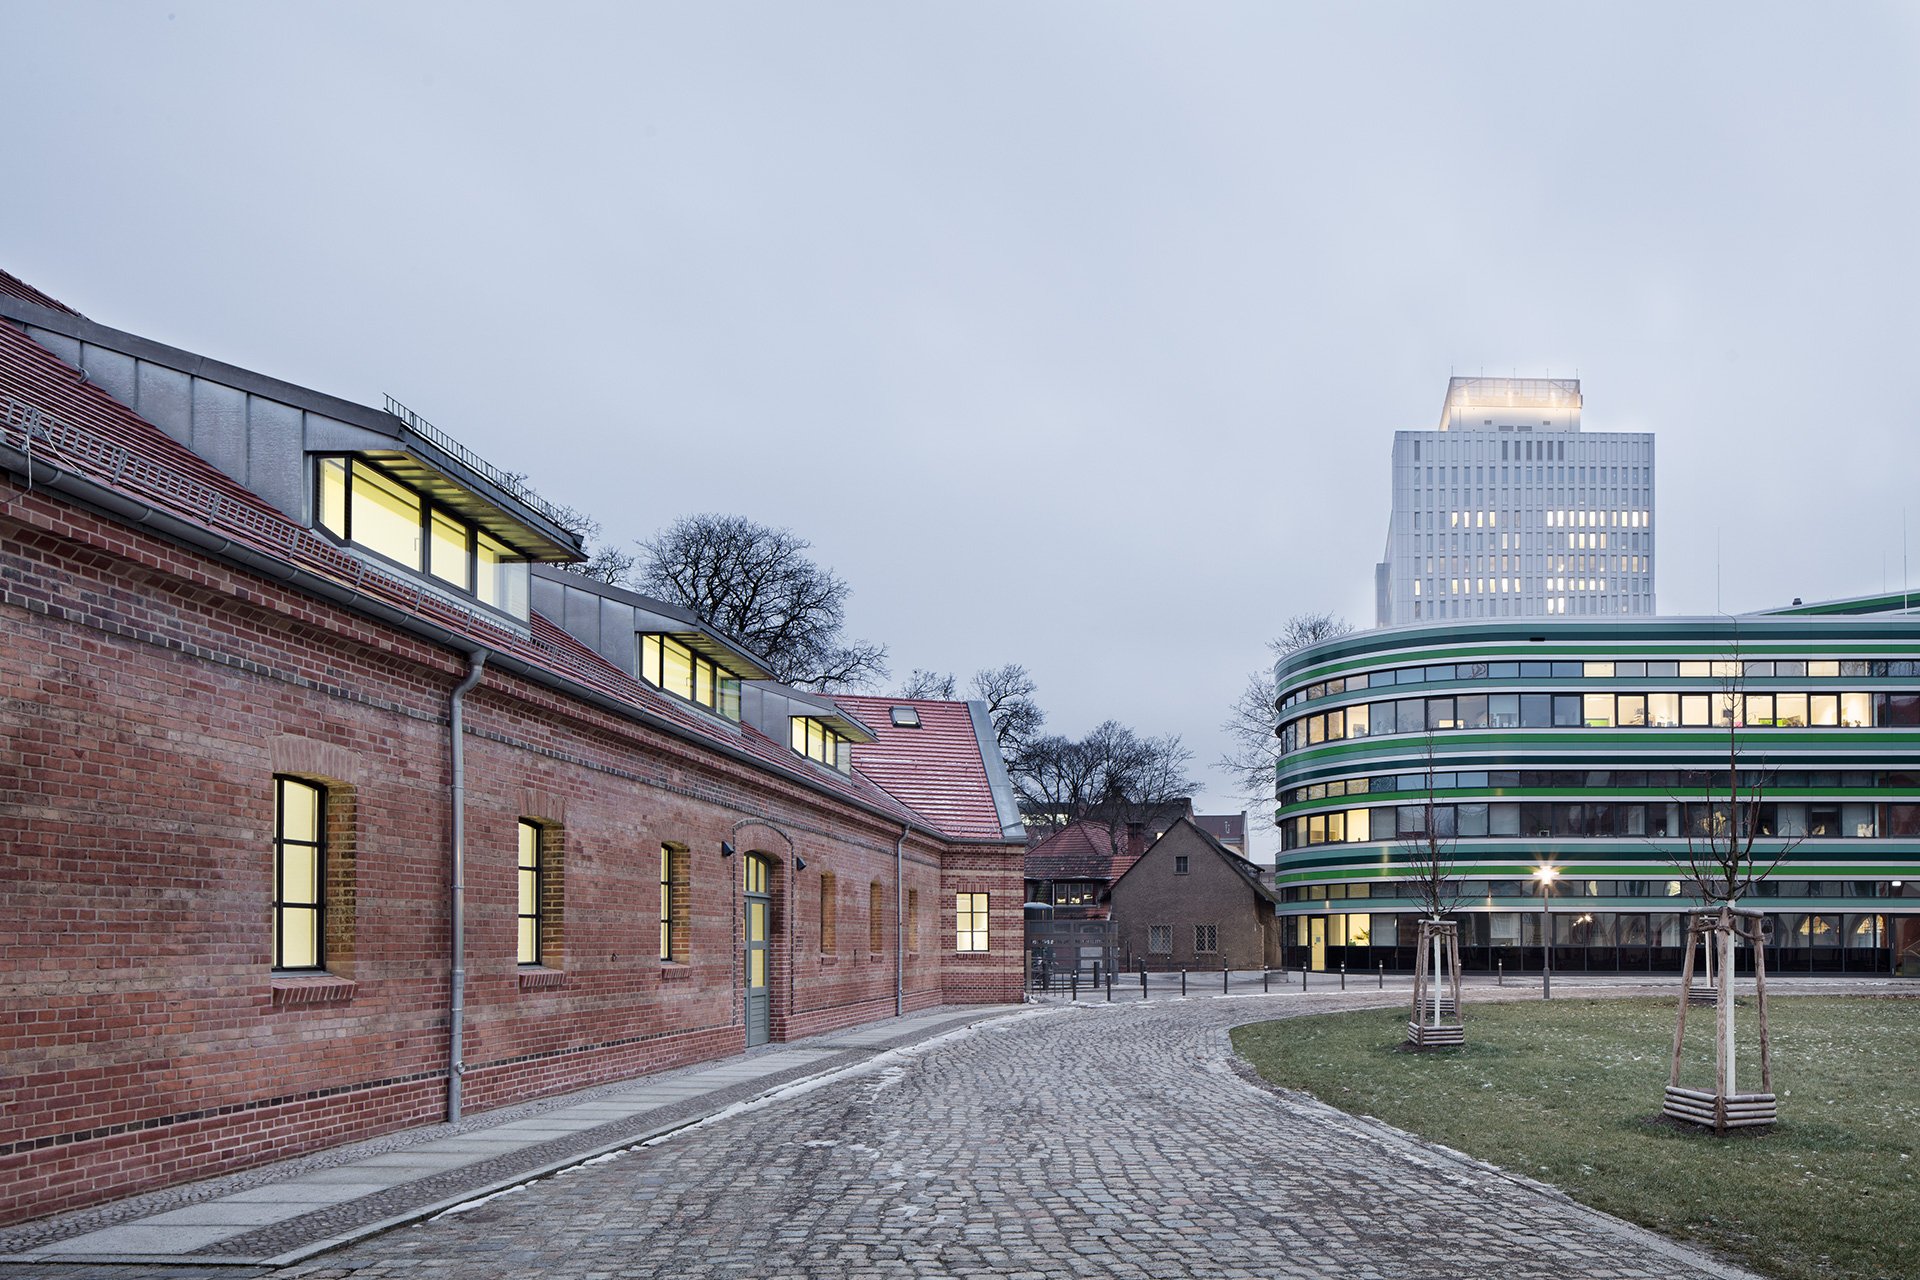 Umbau + Sanierung Haus 9 der Humboldt-Universität zu Berlin